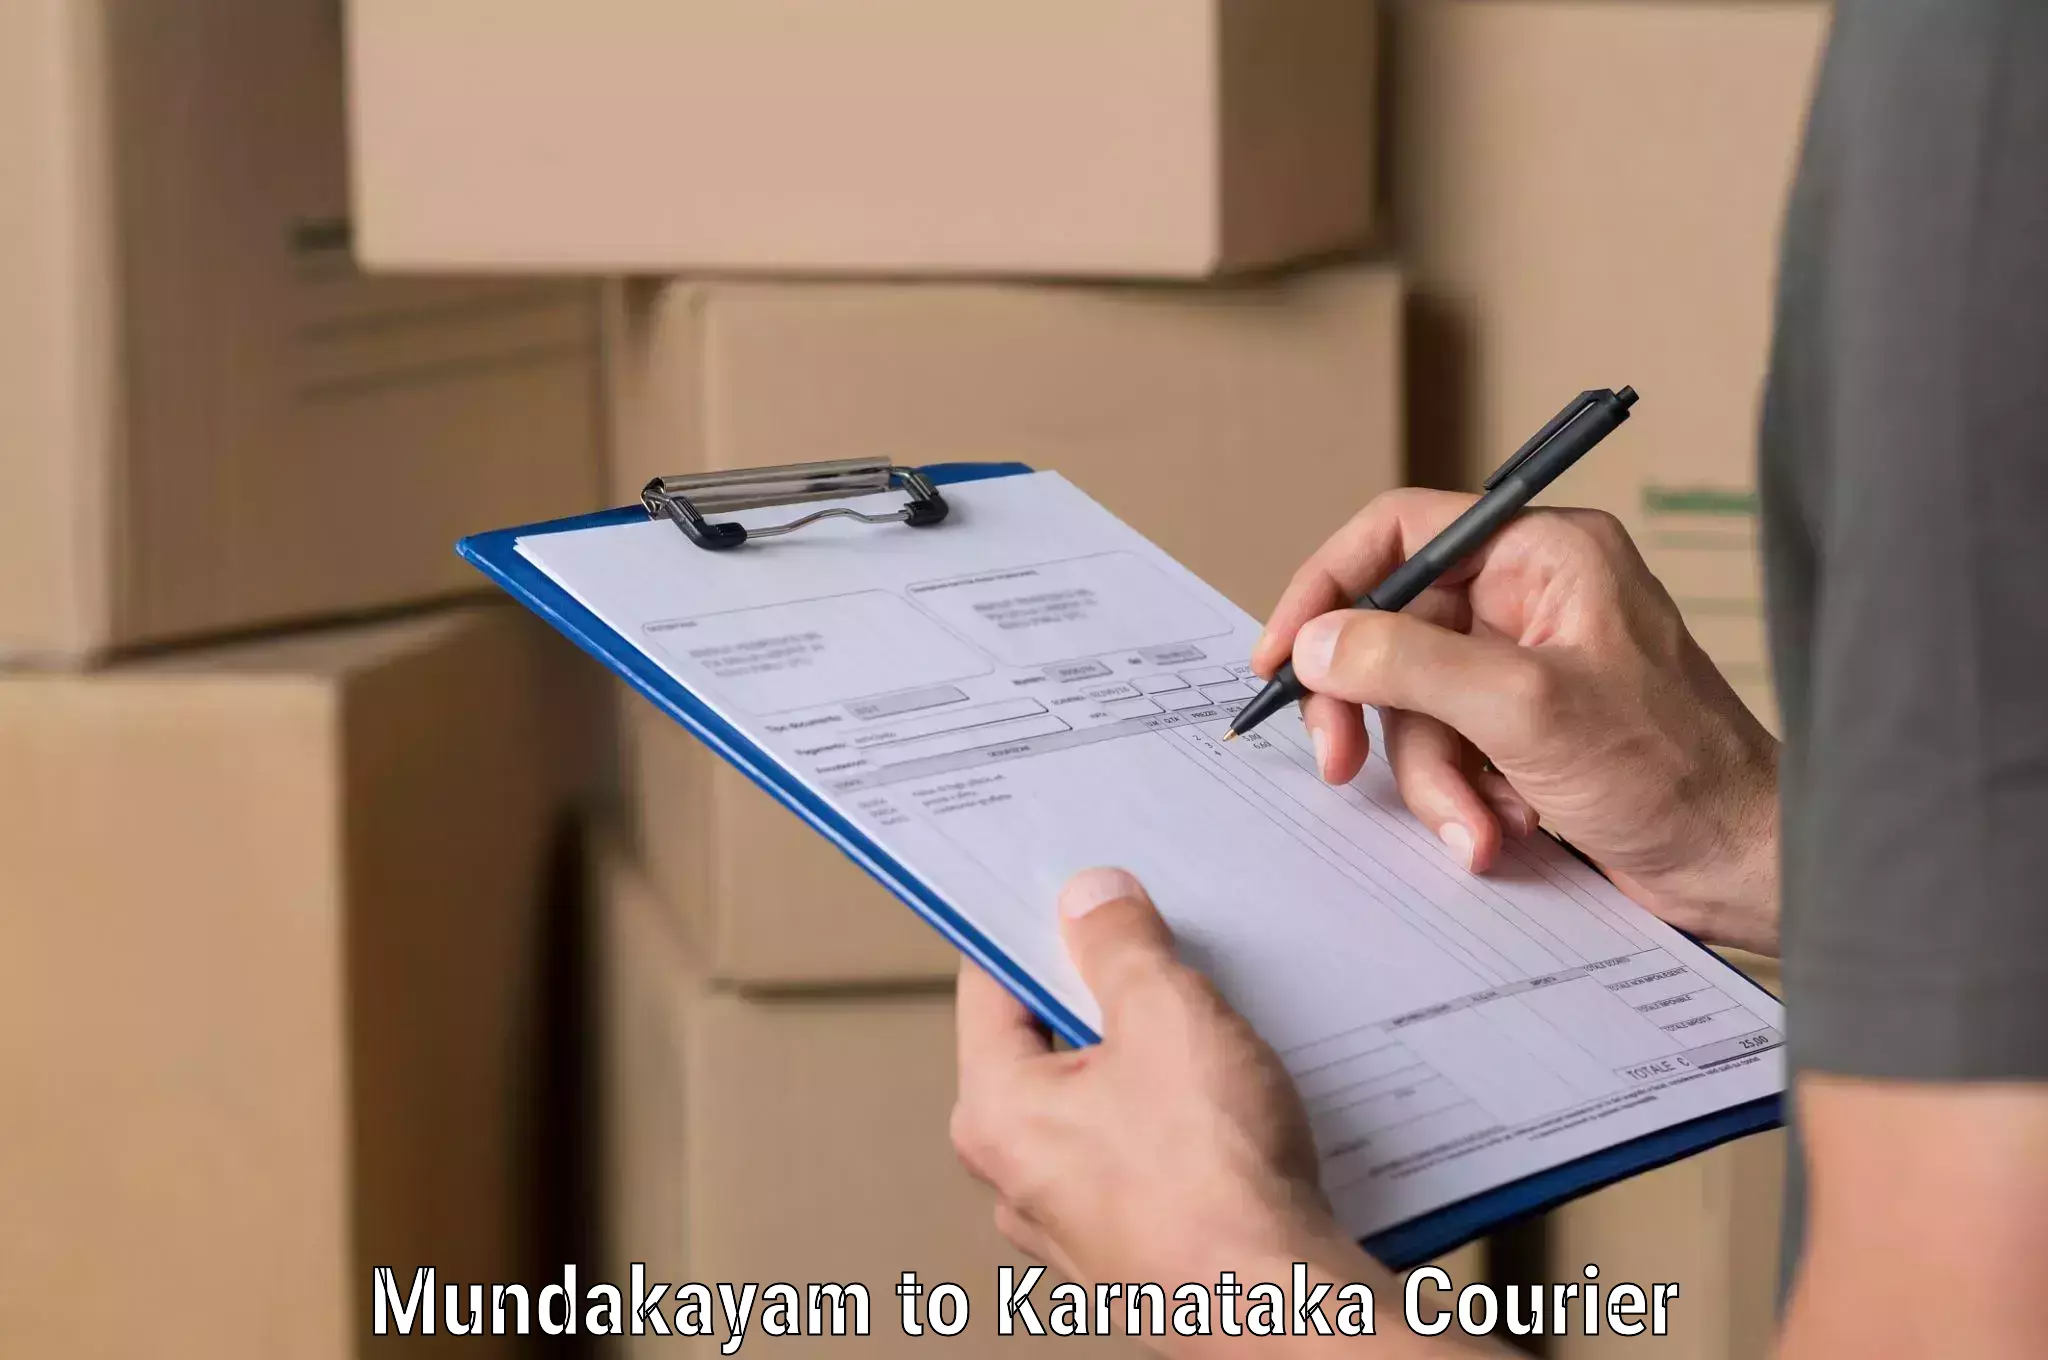 Doorstep delivery service Mundakayam to Sindagi